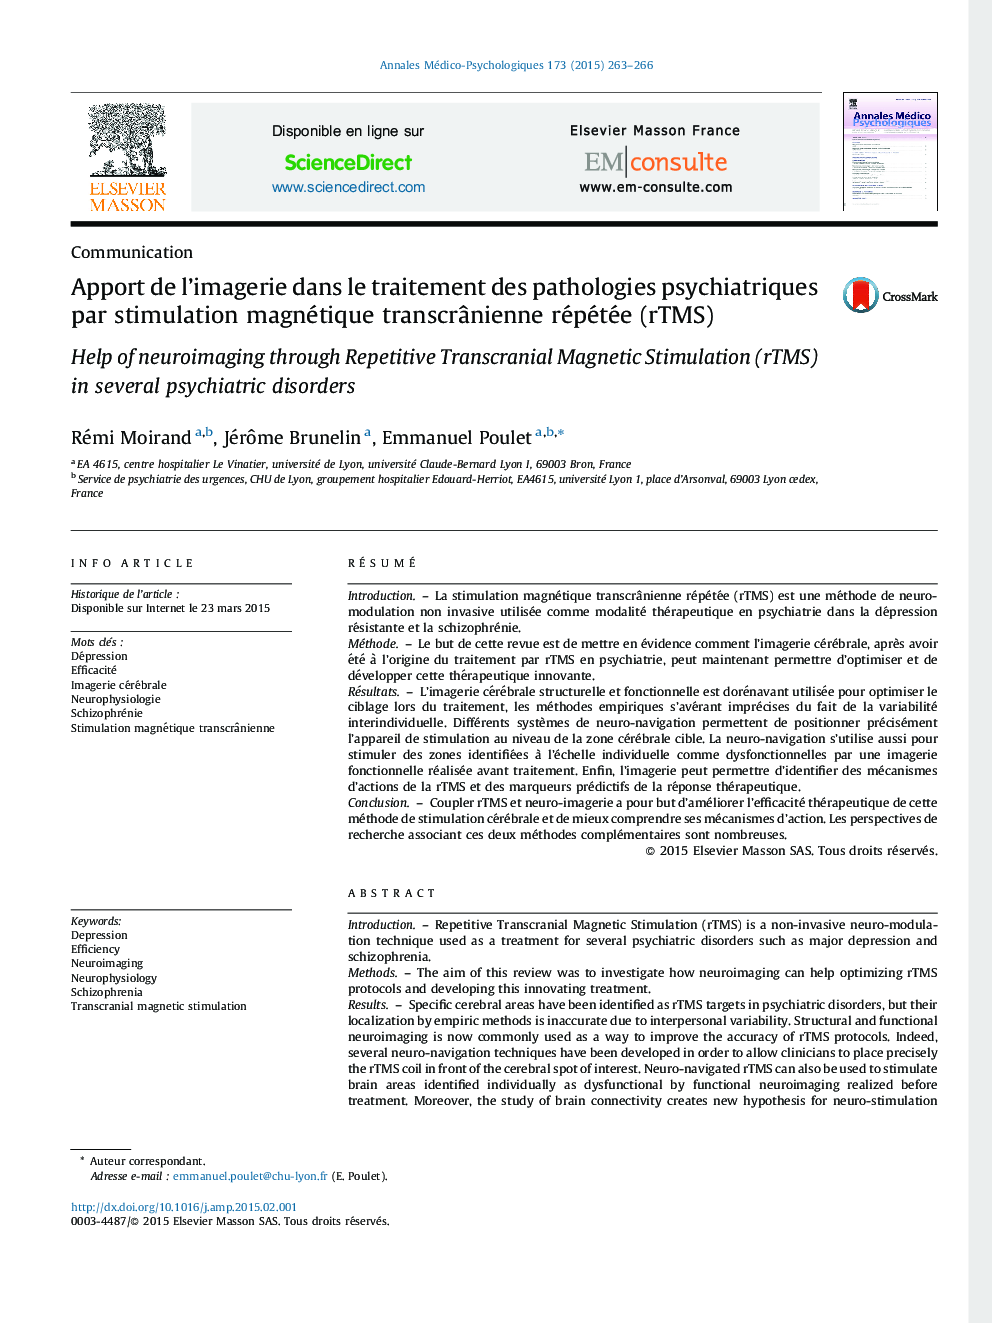 Apport de l’imagerie dans le traitement des pathologies psychiatriques par stimulation magnétique transcrânienne répétée (rTMS)